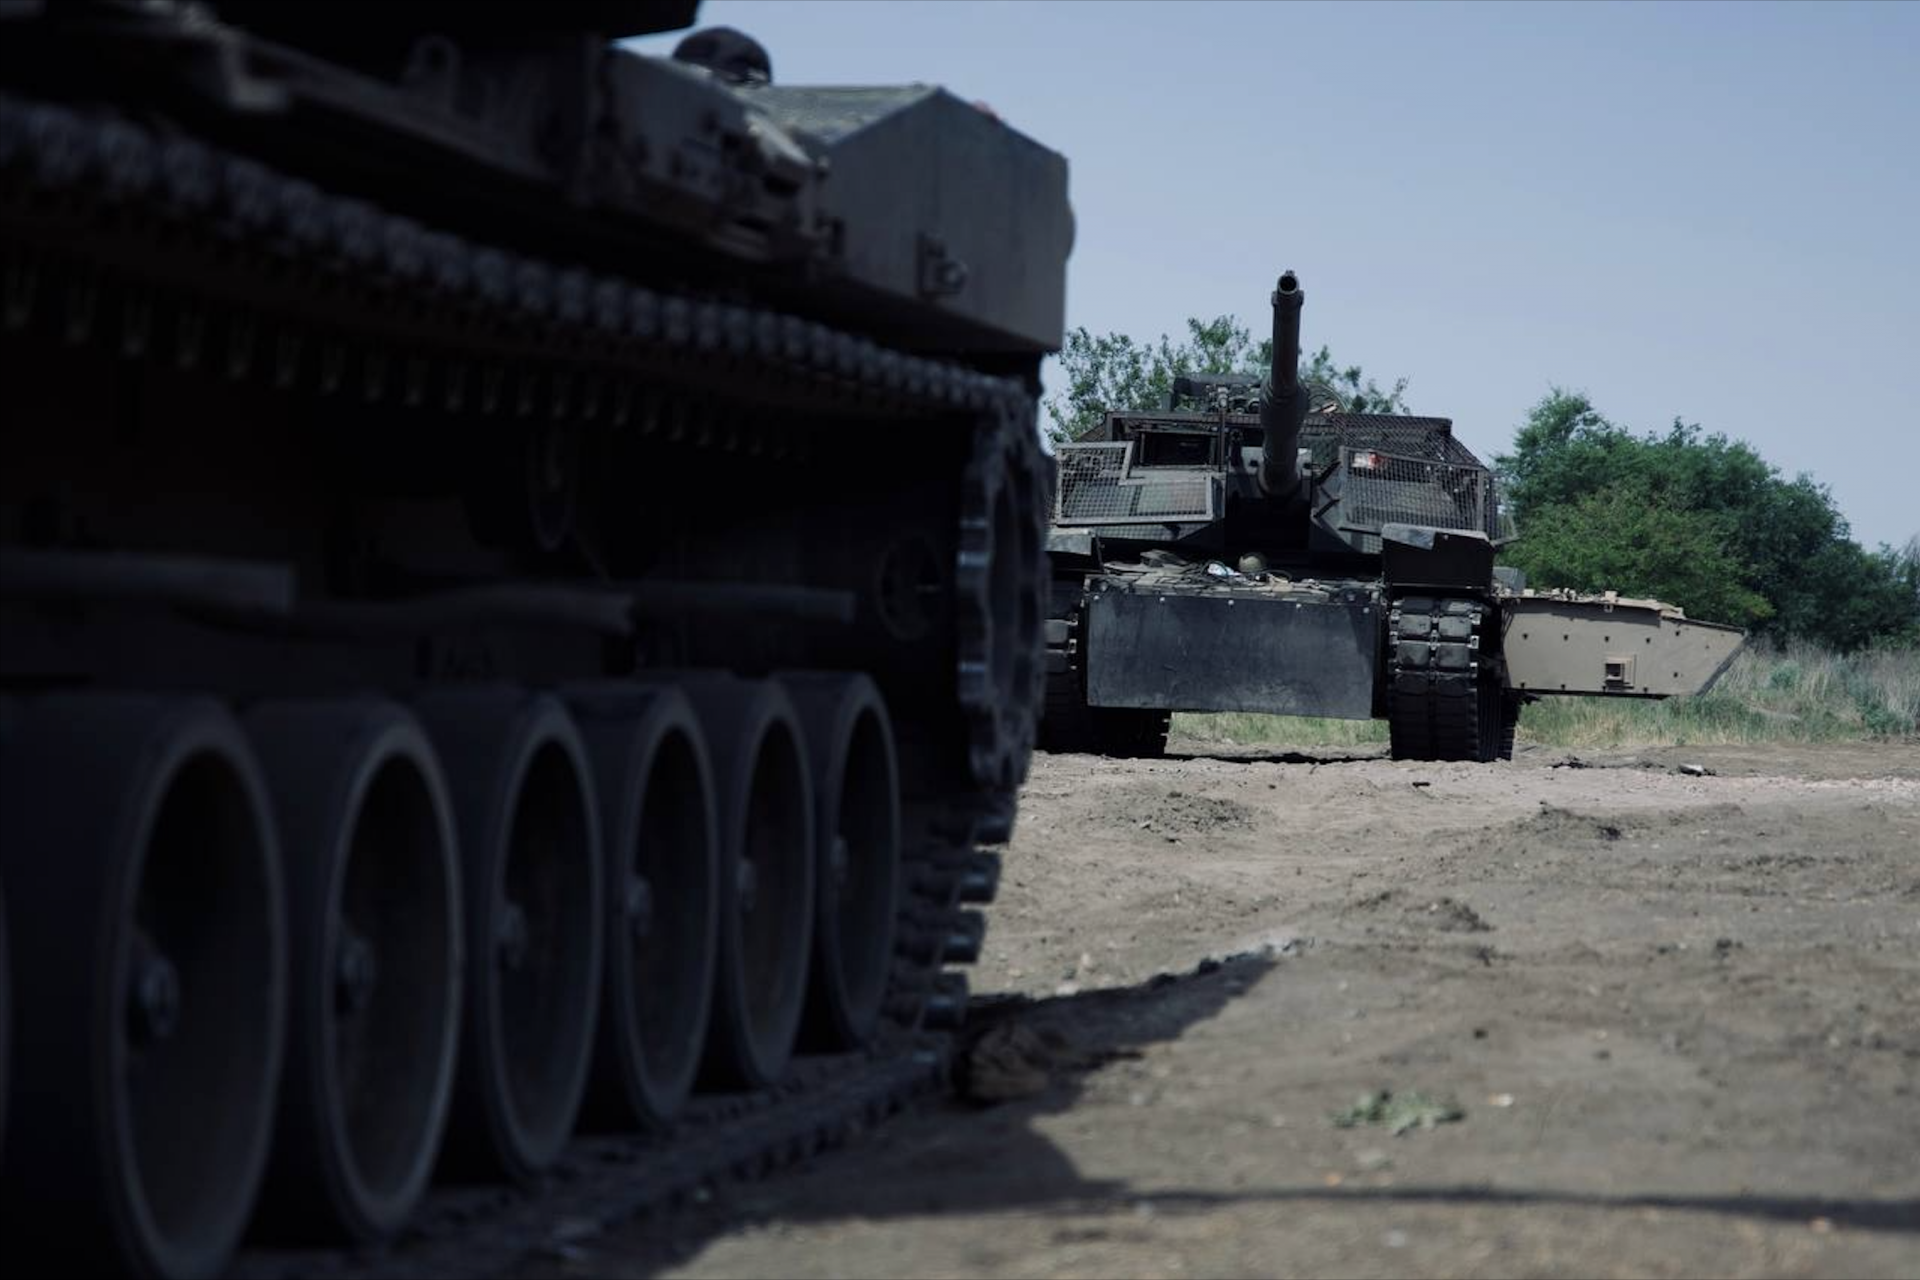 The vulnerabilities the Abrams faces in Ukraine